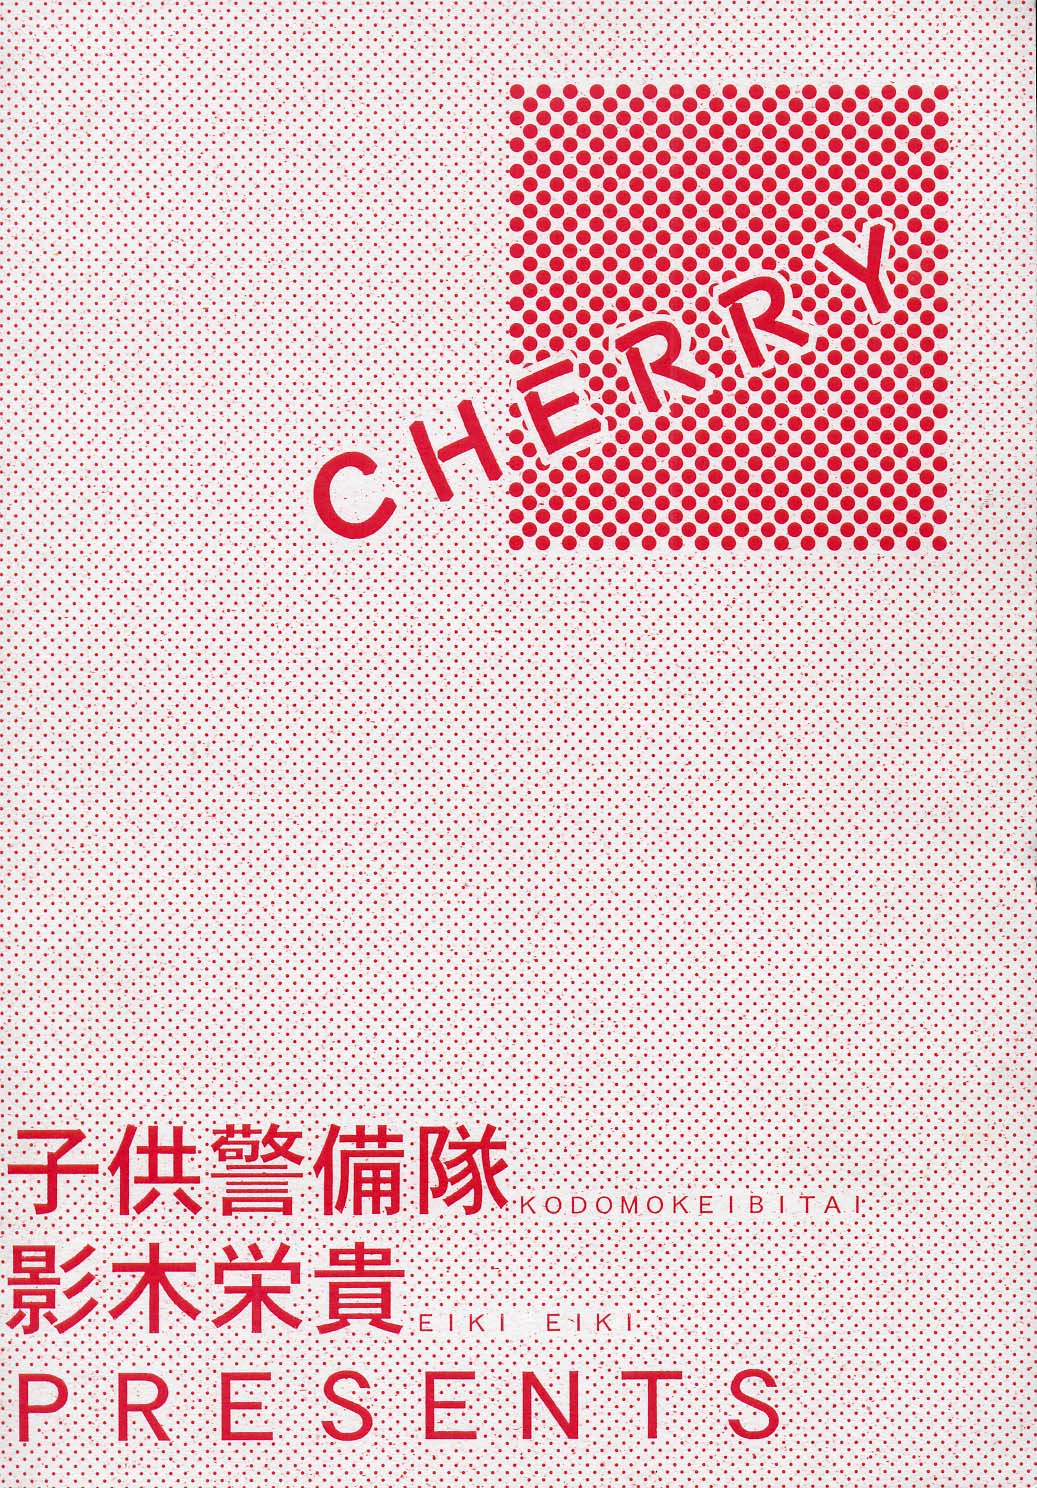 [Kodomokeibitai (Eiki Eiki)] Cherry [子供警備隊 (影木栄貴)] Cherry